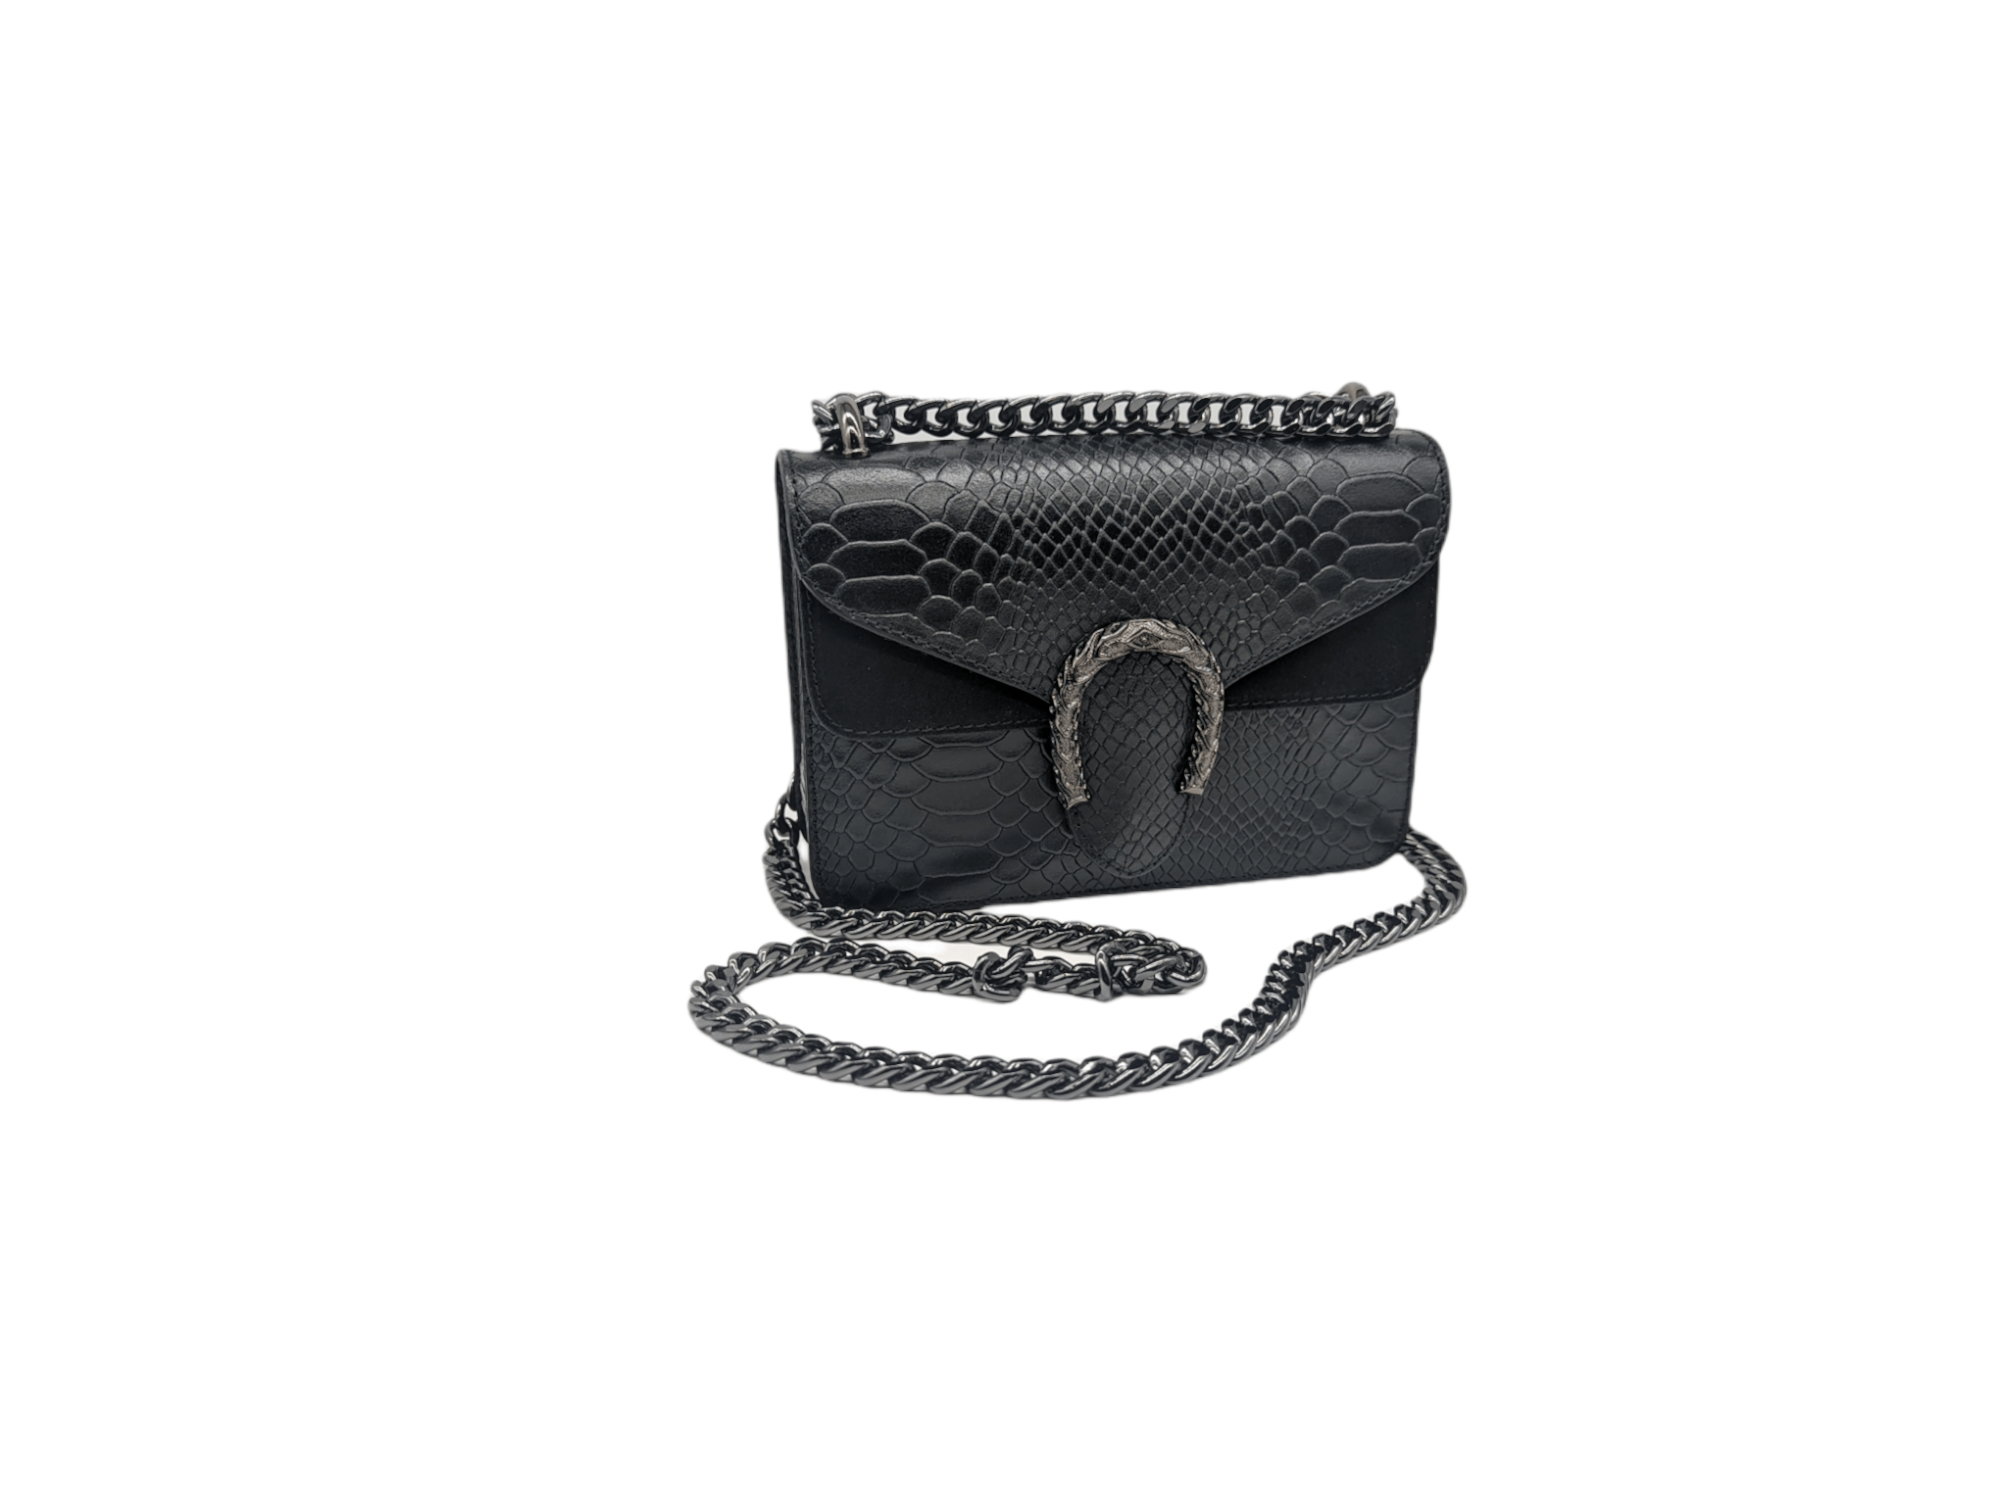 Italian Designer Leather Crossbody Bag with Horseshoe - Swolit Camilla Snake- Black